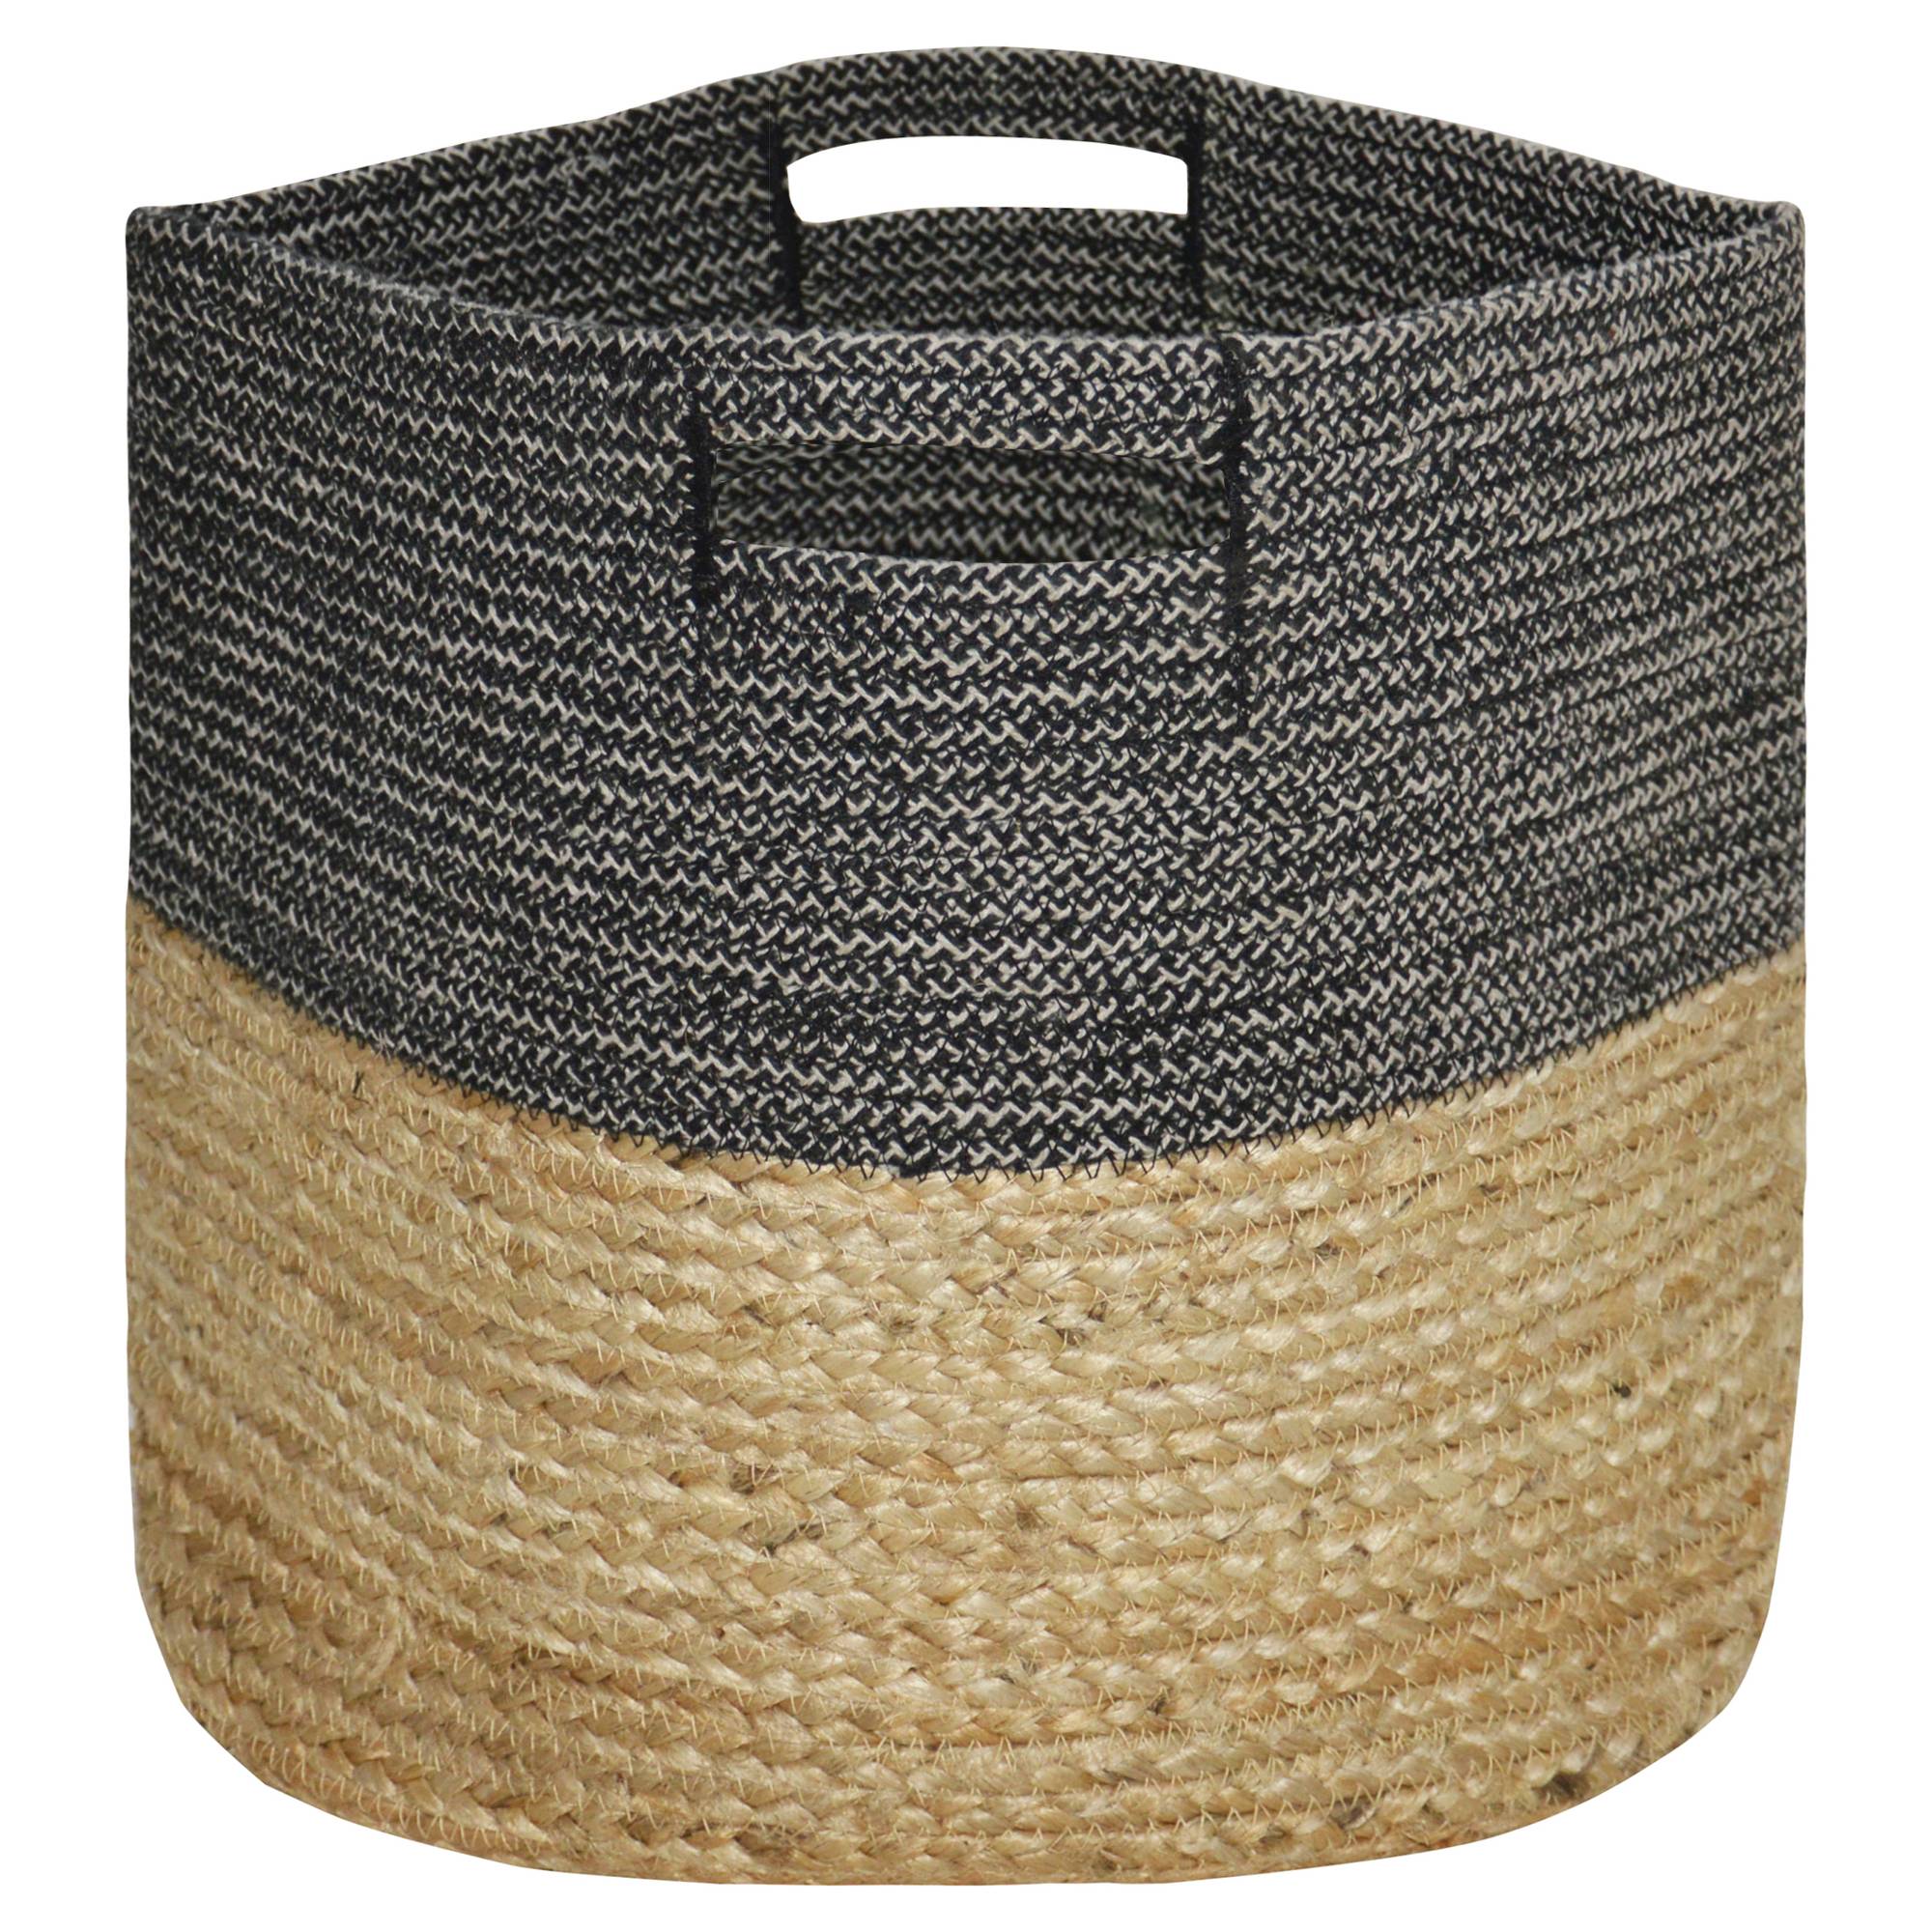 Large Round Woven Storage Basket, Dark Grey